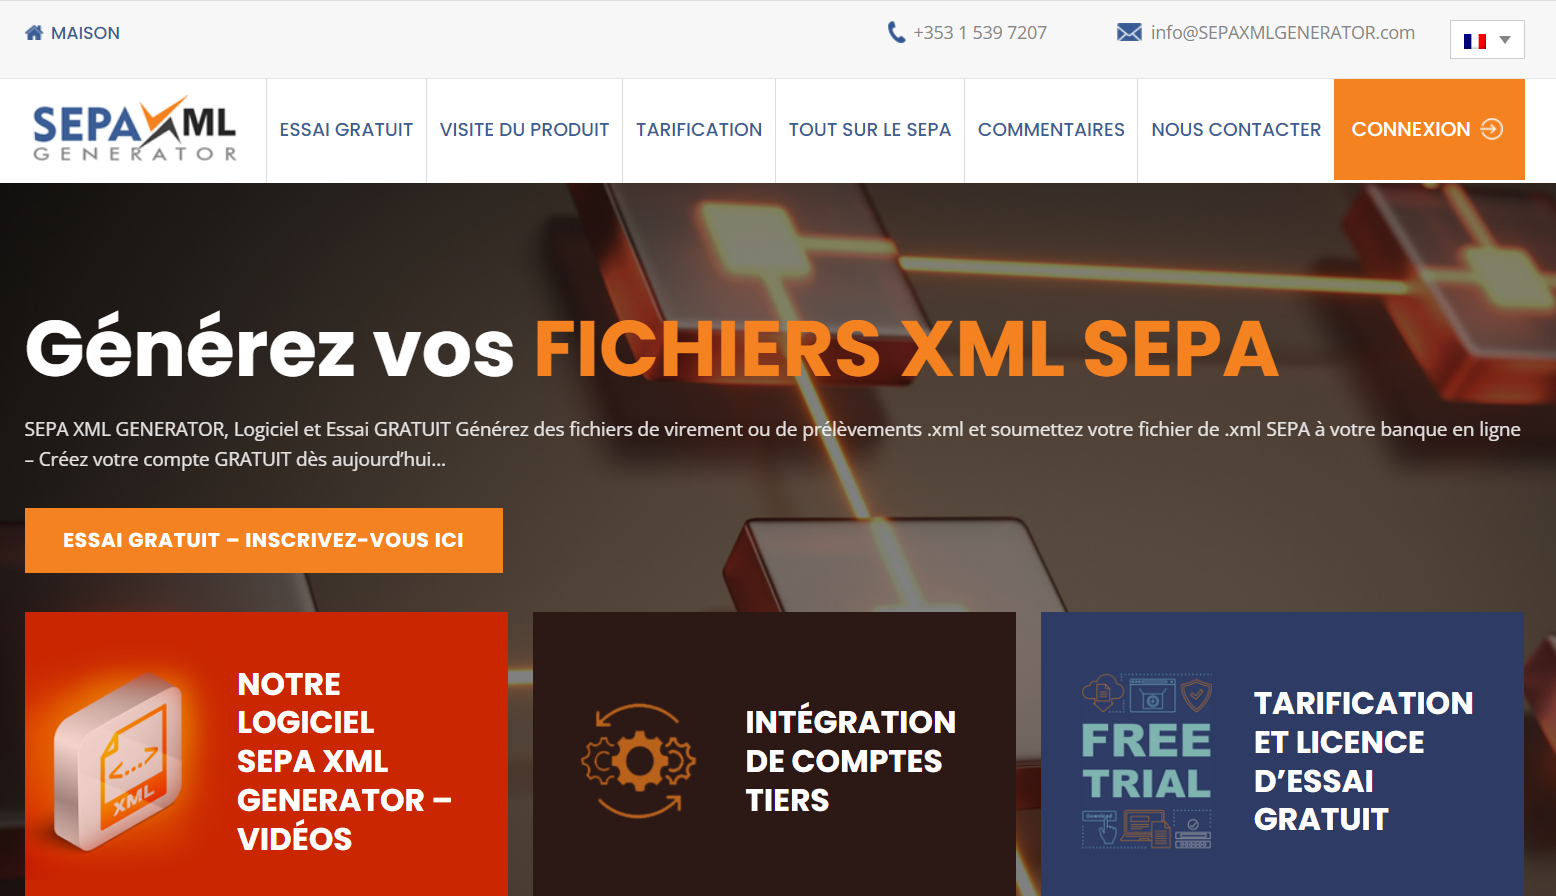 O Webiste SEPA XML GENERATOR está agora em francês